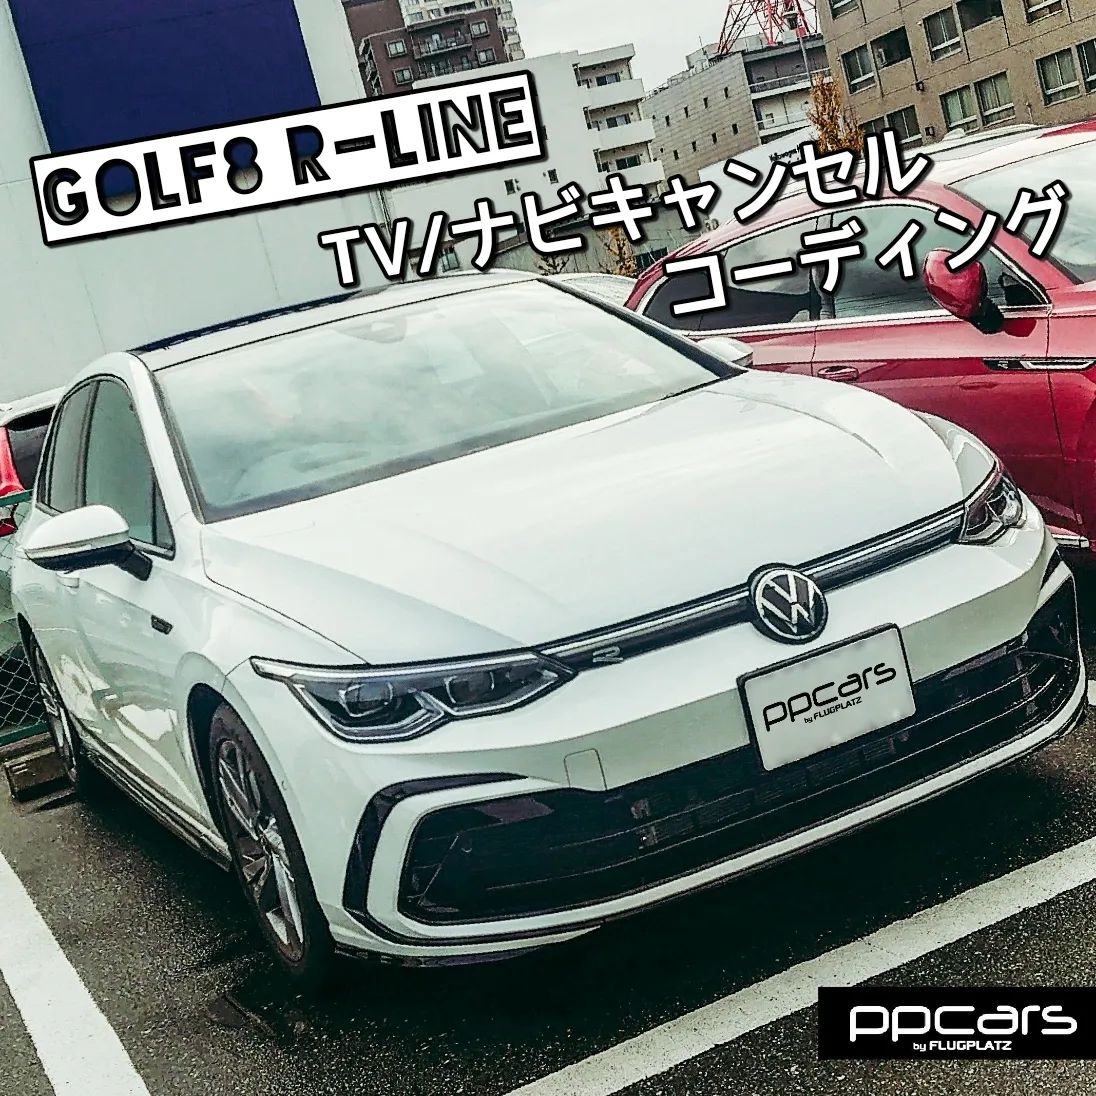 Golf8 (5H) R-Line x コーディング (TVキャンセル/ナビキャンセル)